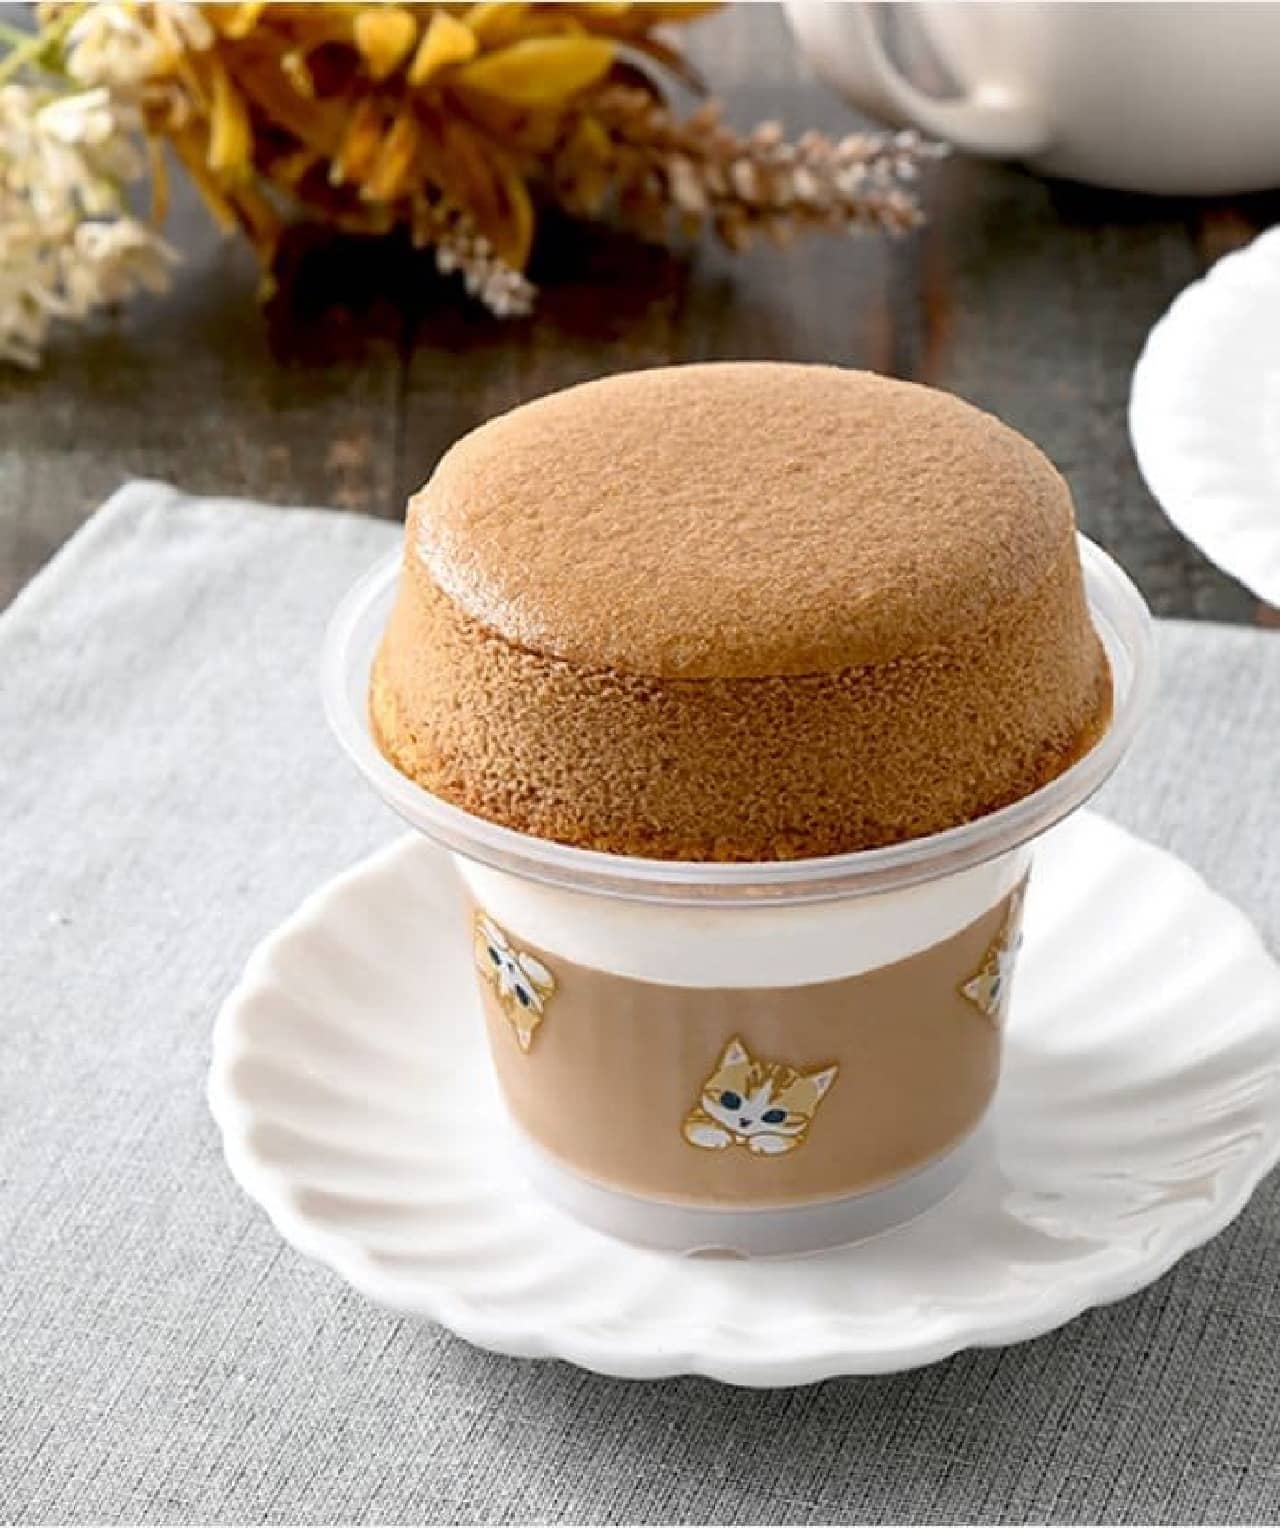 FamilyMart "Souffle Pudding Cafe Nyate